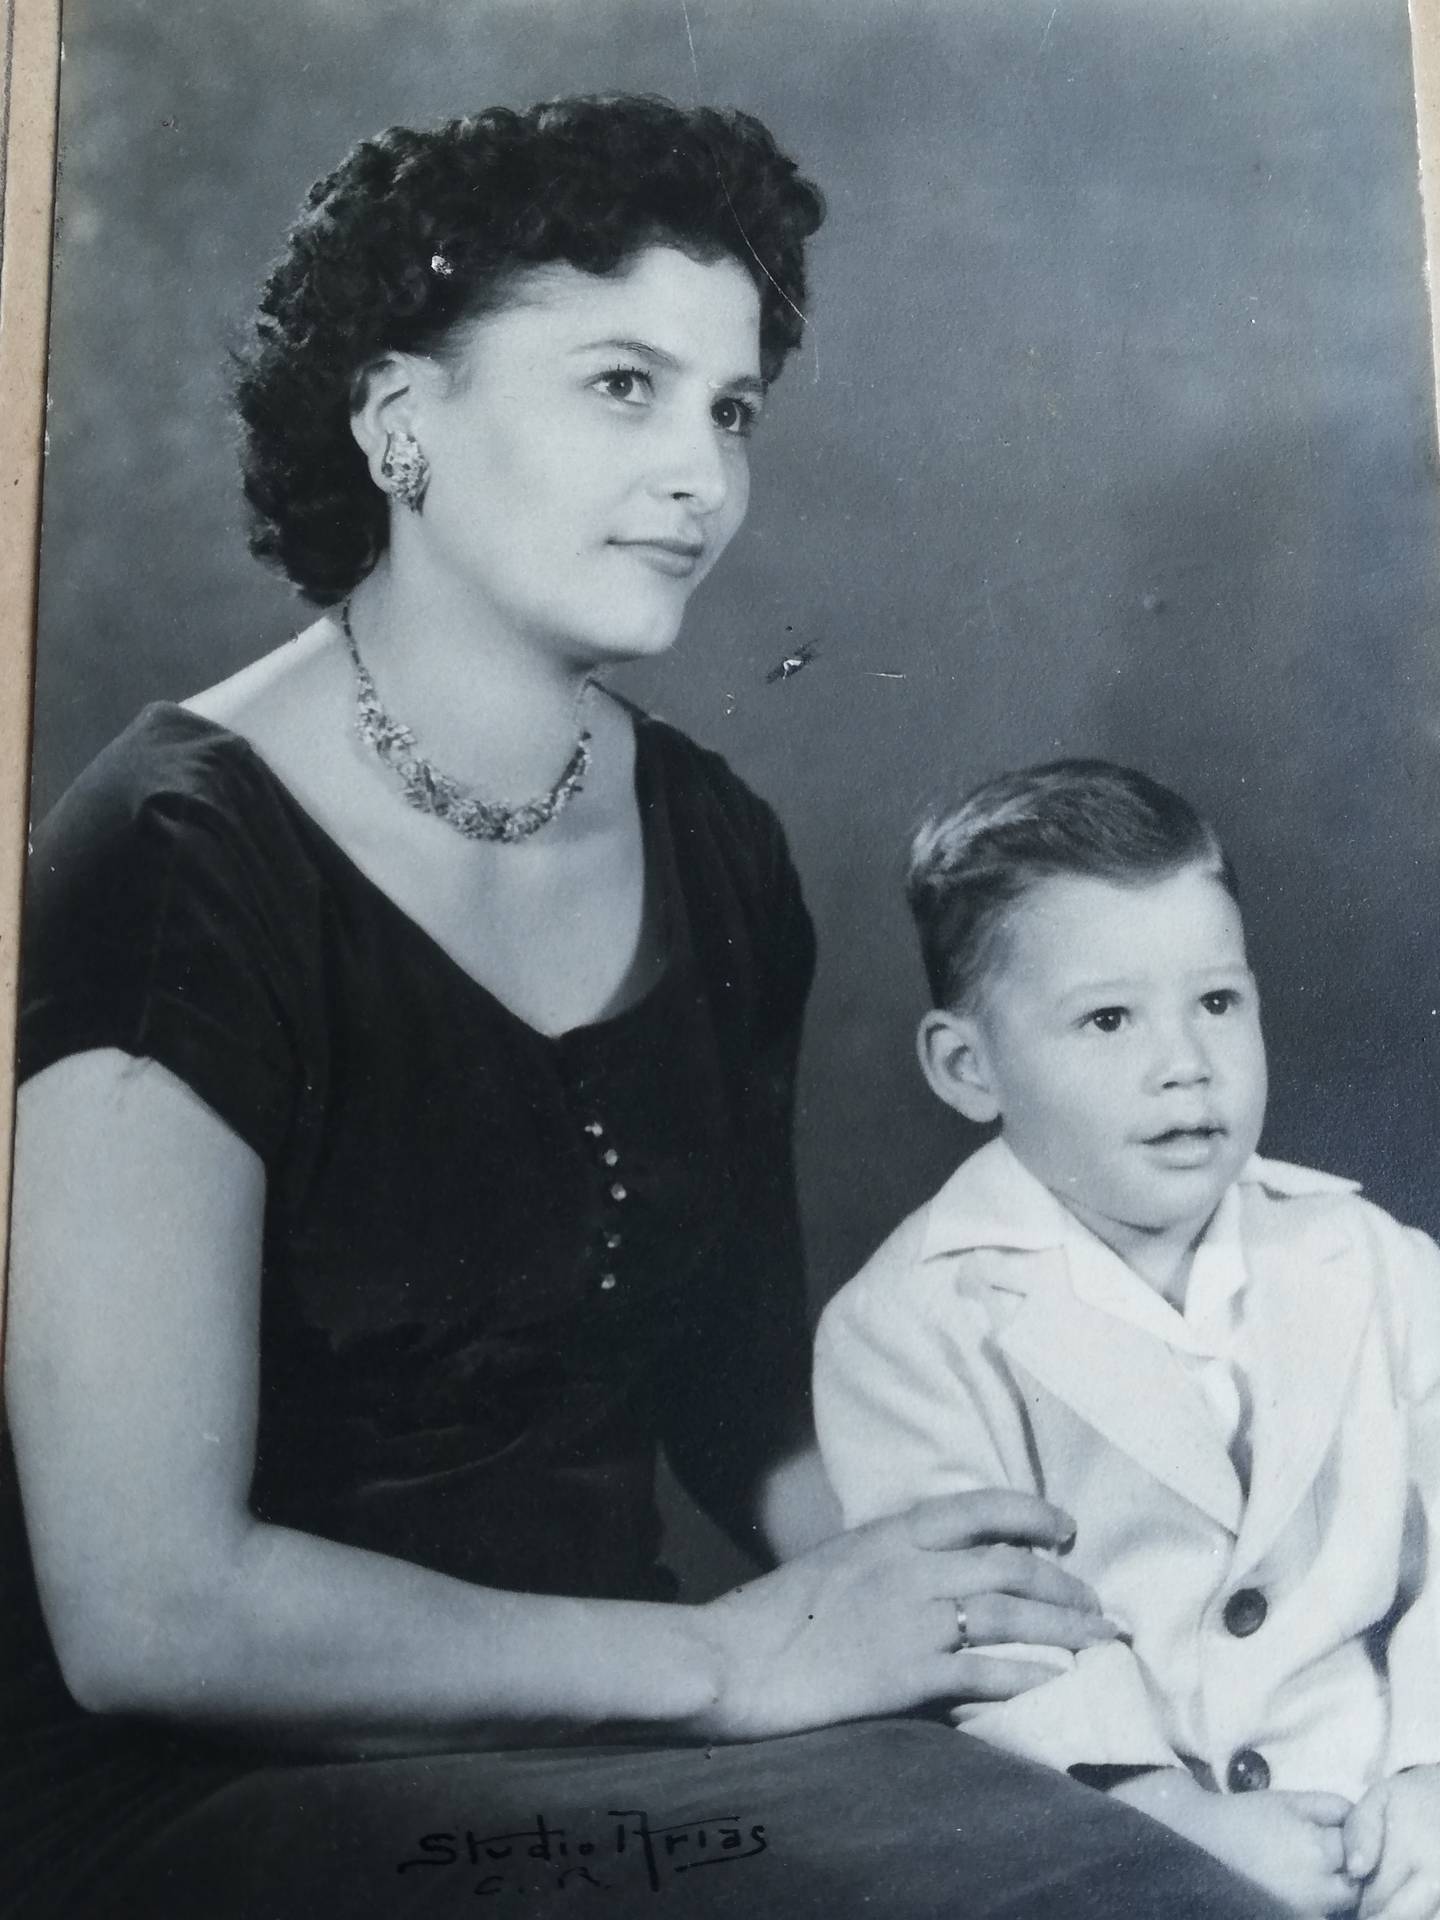 El 12 de octubre de 1970, Costa Rica vivió lo que se considera como la primera explosión, registrada por los medios de comunicación, de cilindros de gas, Jorge Alberto Cordero Chinchilla tenía 14 años y fue uno de los afectados. En la foto con su mamá, doña Norma Cordero.